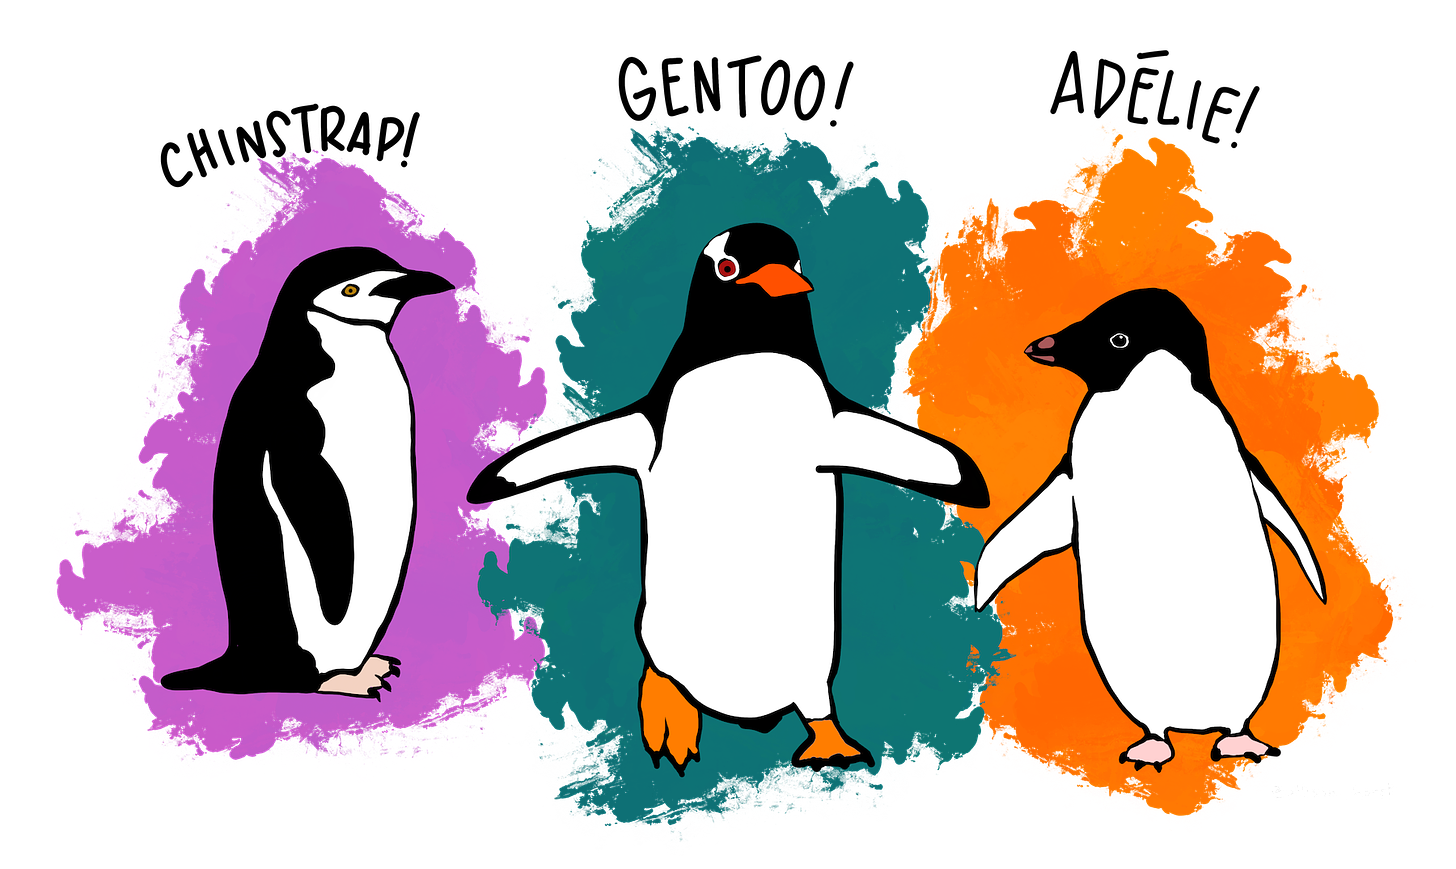 Illustration of Chinstrap, Gentoo, and Adélie penguins